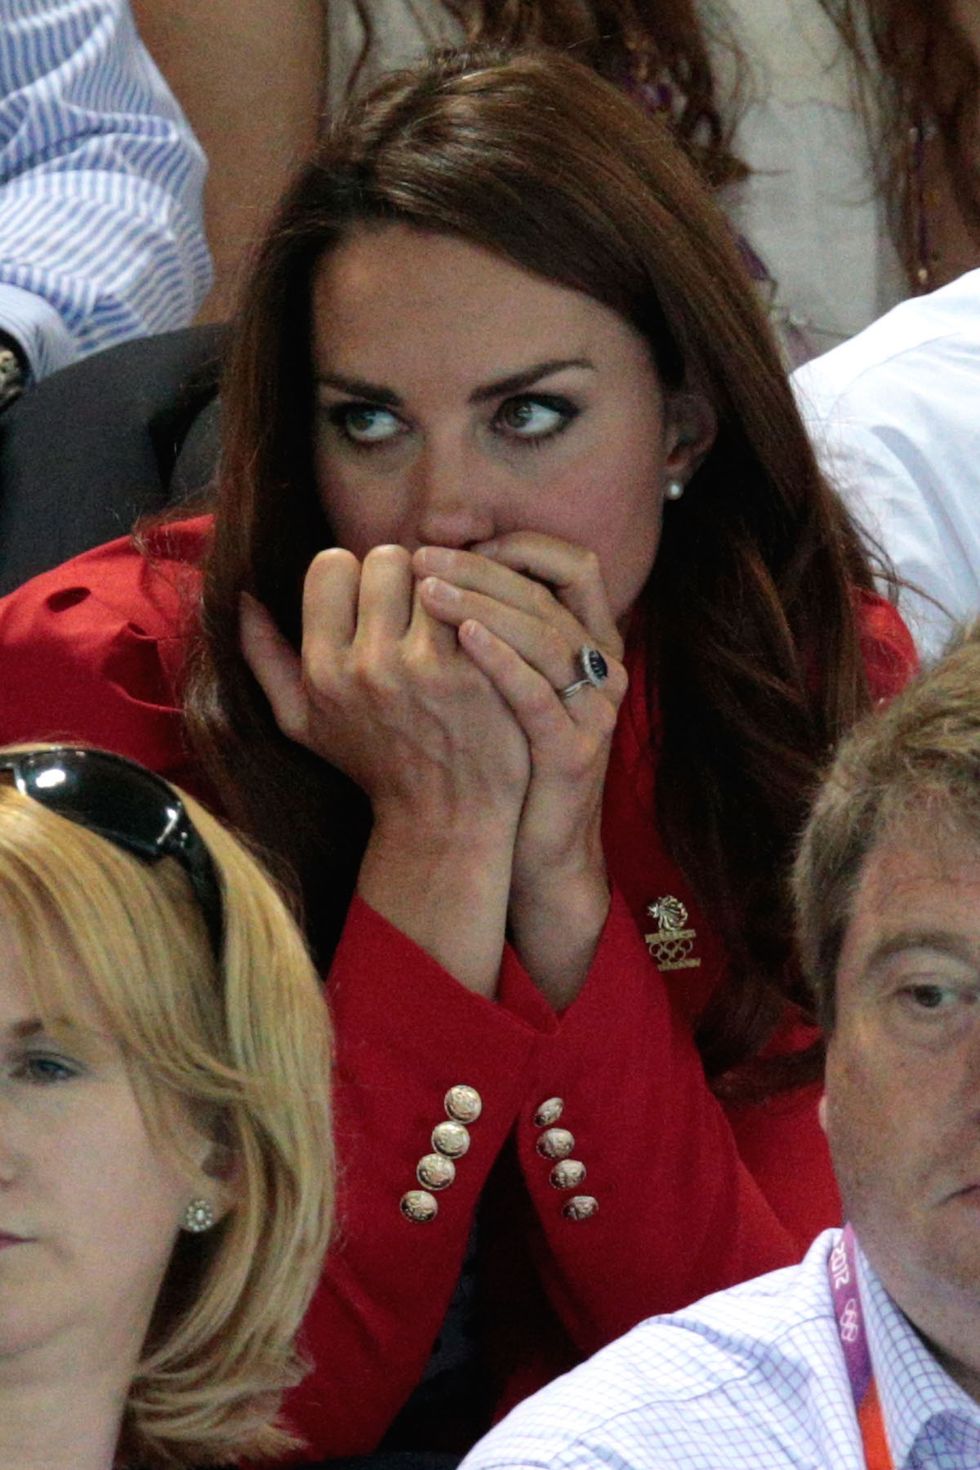 <p>Kate è super sportiva e appassionata di sport! Per questo quando guarda i match dei suoi sport preferiti diventa davvero nervosa.</p>